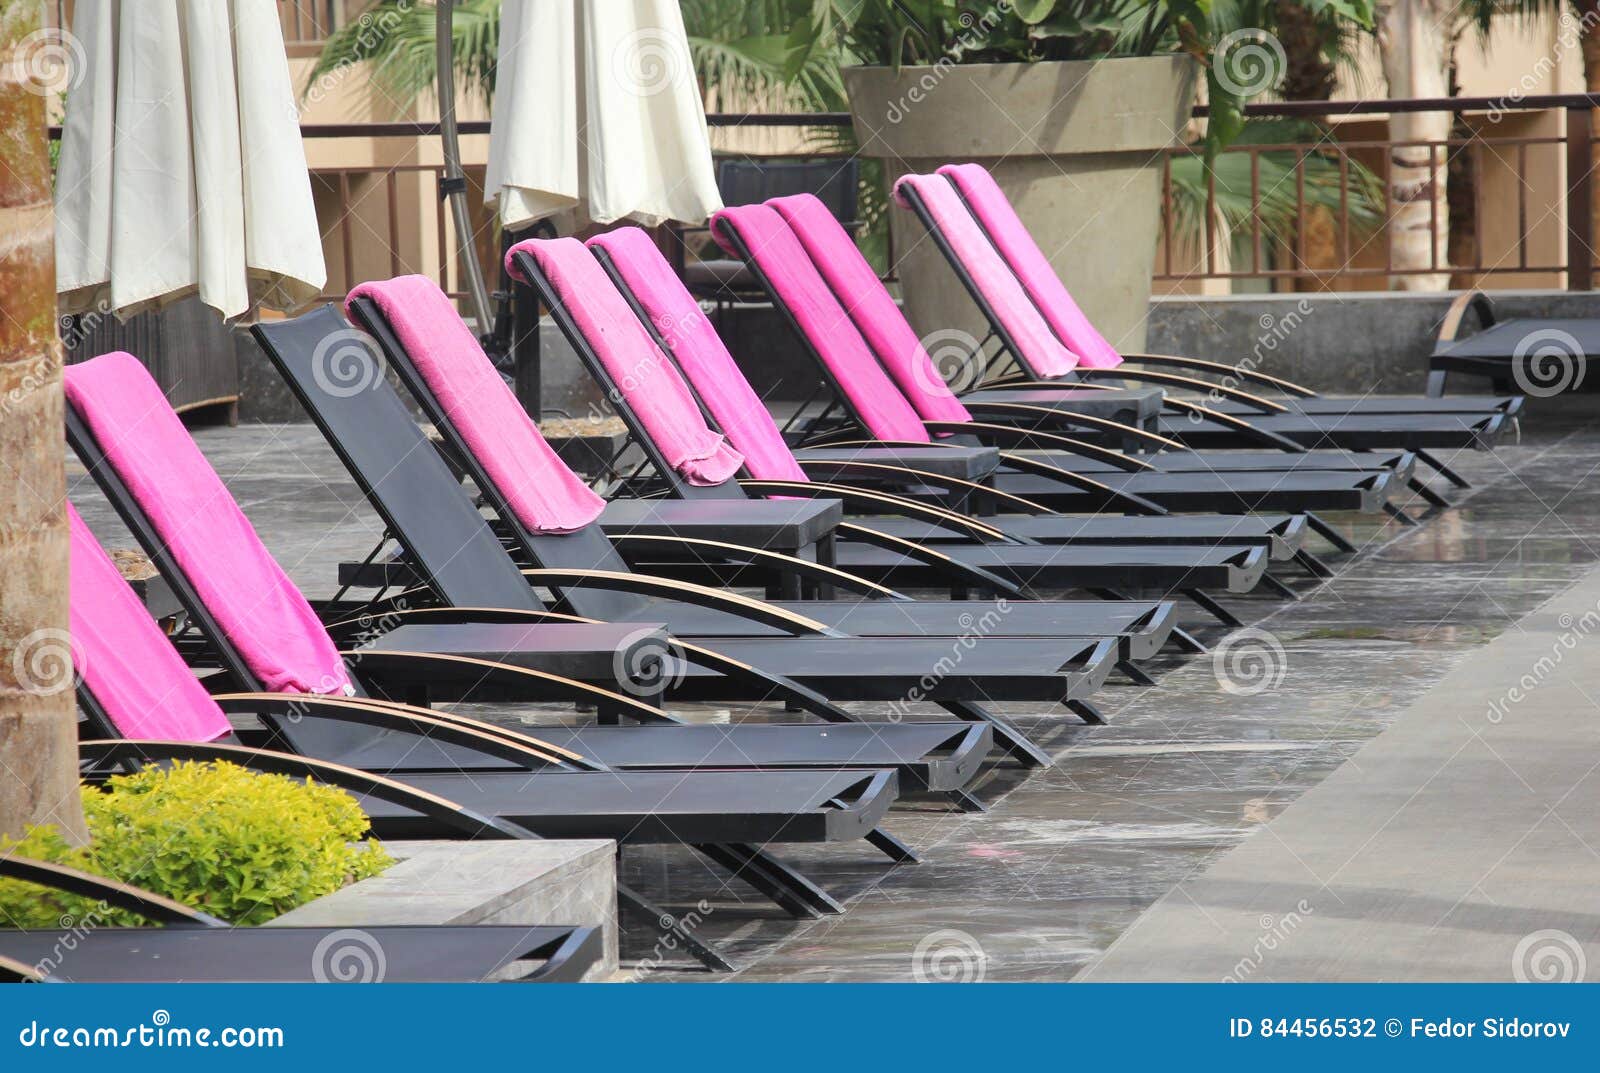 Строка стульев бассейна. Строка стульев рядом с бассейном с розовыми полотенцами